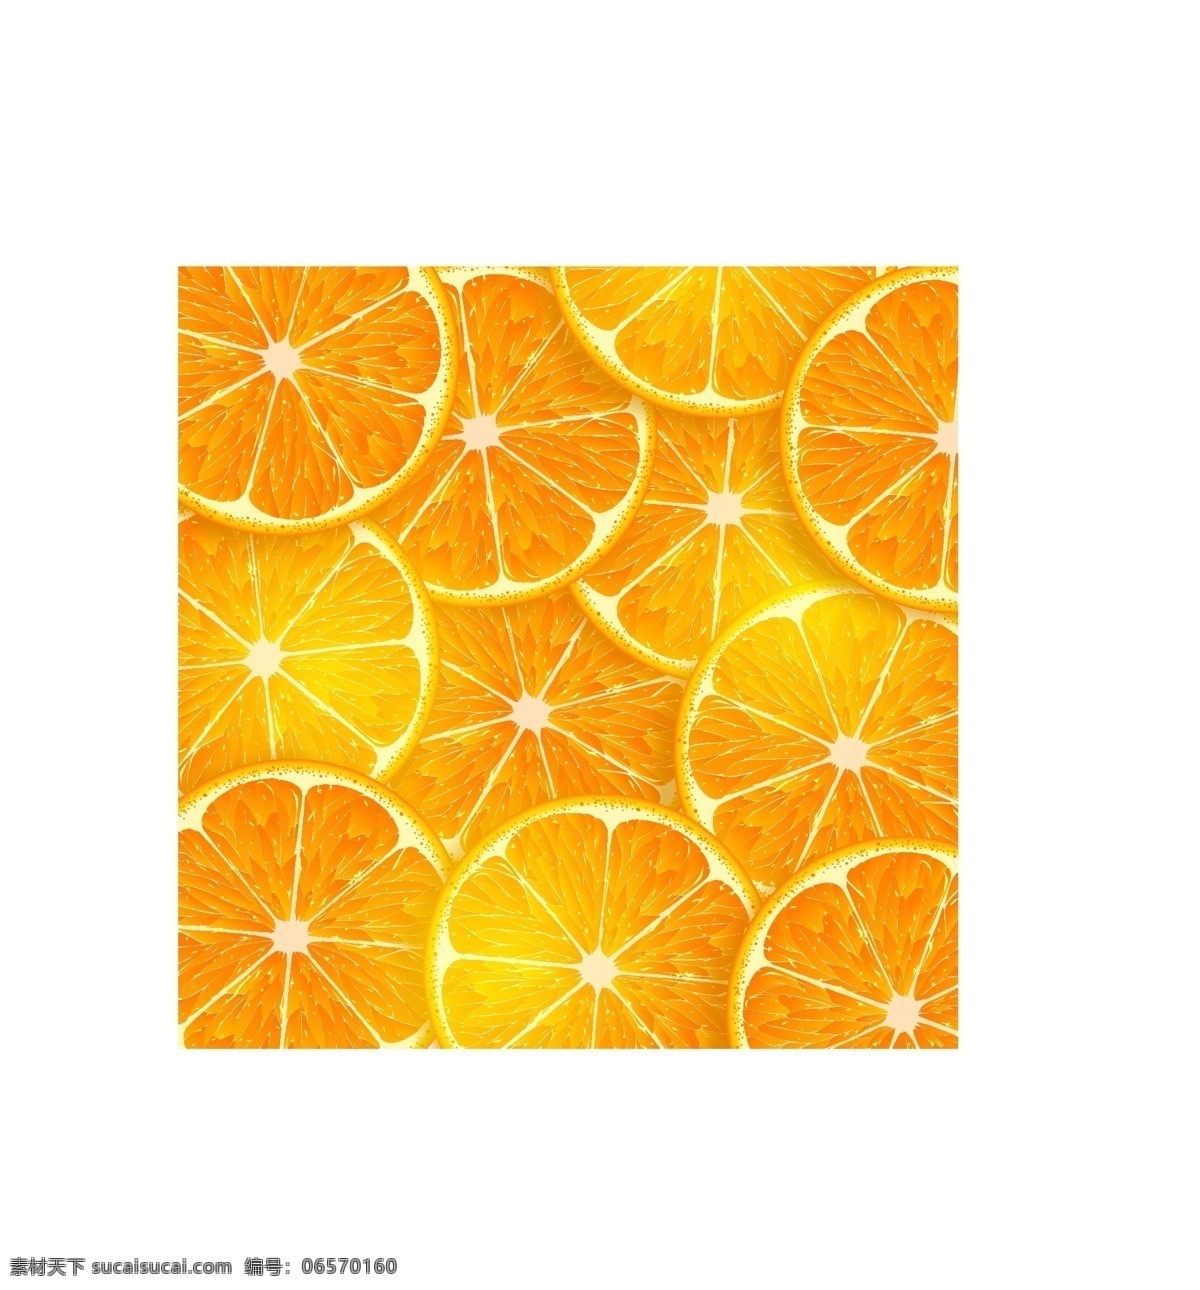 橙子背景 橙子水果背景 水果切片 水果主题 橙子切片 手绘水果 水彩水果 矢量 水果 水果素材 新鲜水果 矢量水果素材 卡通水果素材 卡通水果 橙子 橙汁 饮料 横切面 香橙 橙子矢量图 橘子 柑橘 甜橙 桔子 橙子图片 卡通橙子素材 卡通橙子 切开的橙子 橙子素材 矢量橙子素材 矢量橙子